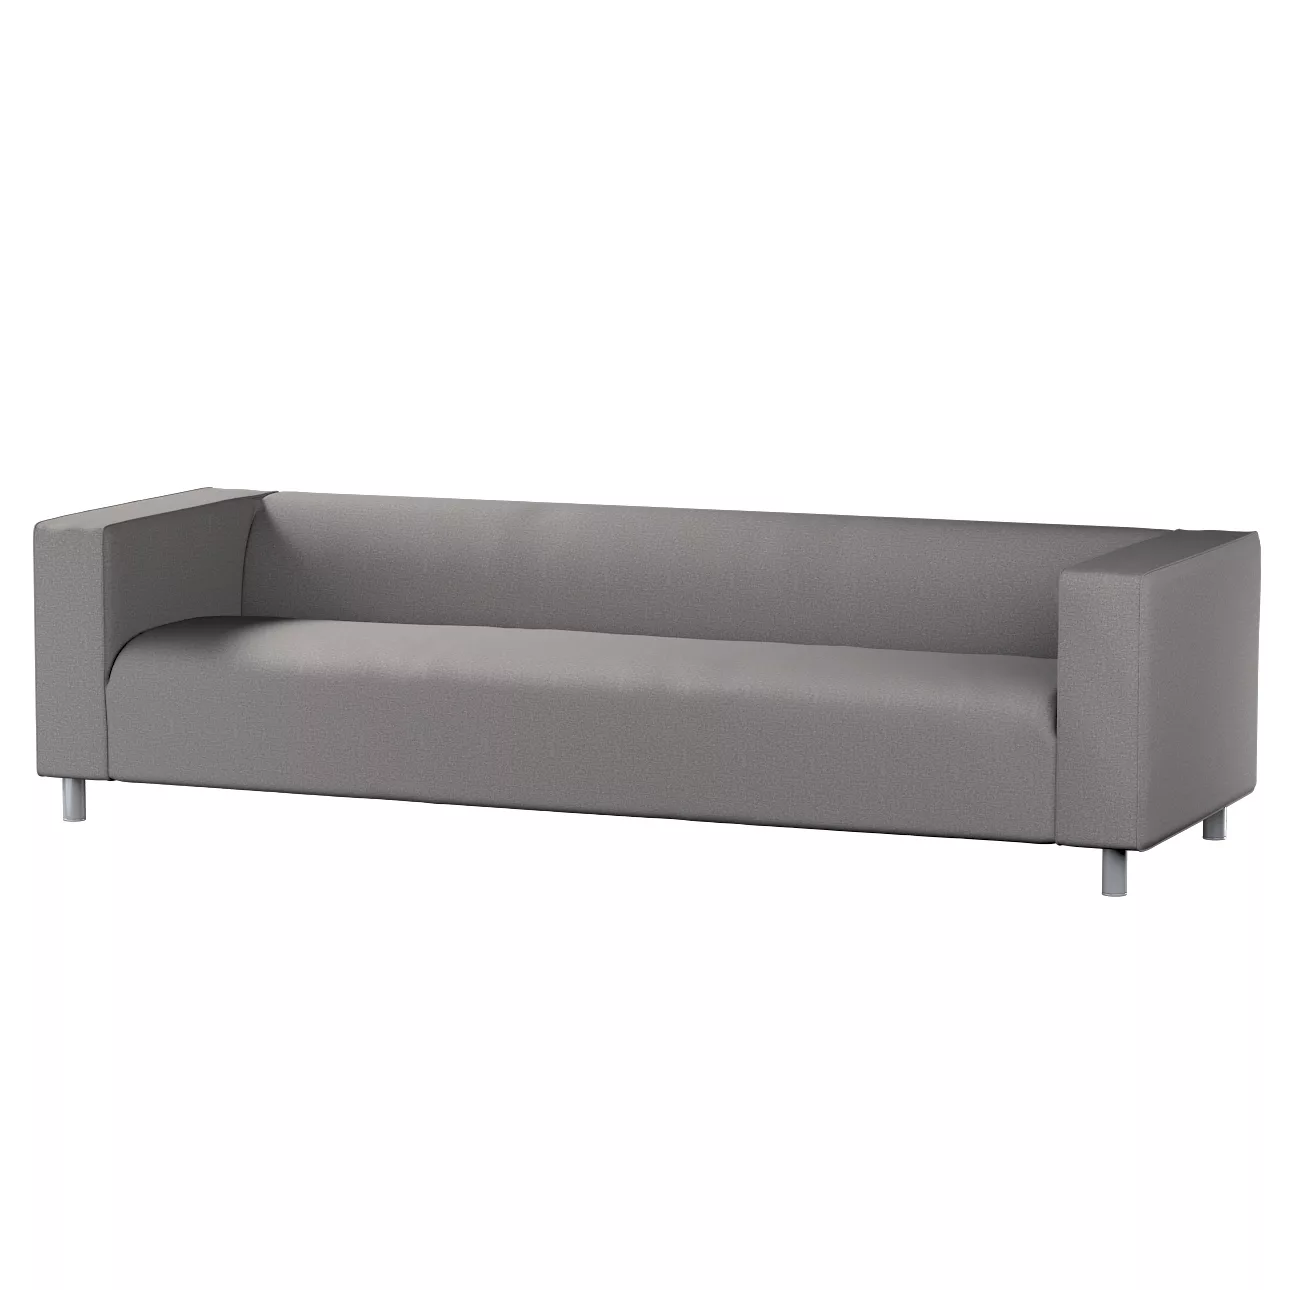 Bezug für Klippan 4-Sitzer Sofa, grau, Bezug für Klippan 4-Sitzer, Edinburg günstig online kaufen